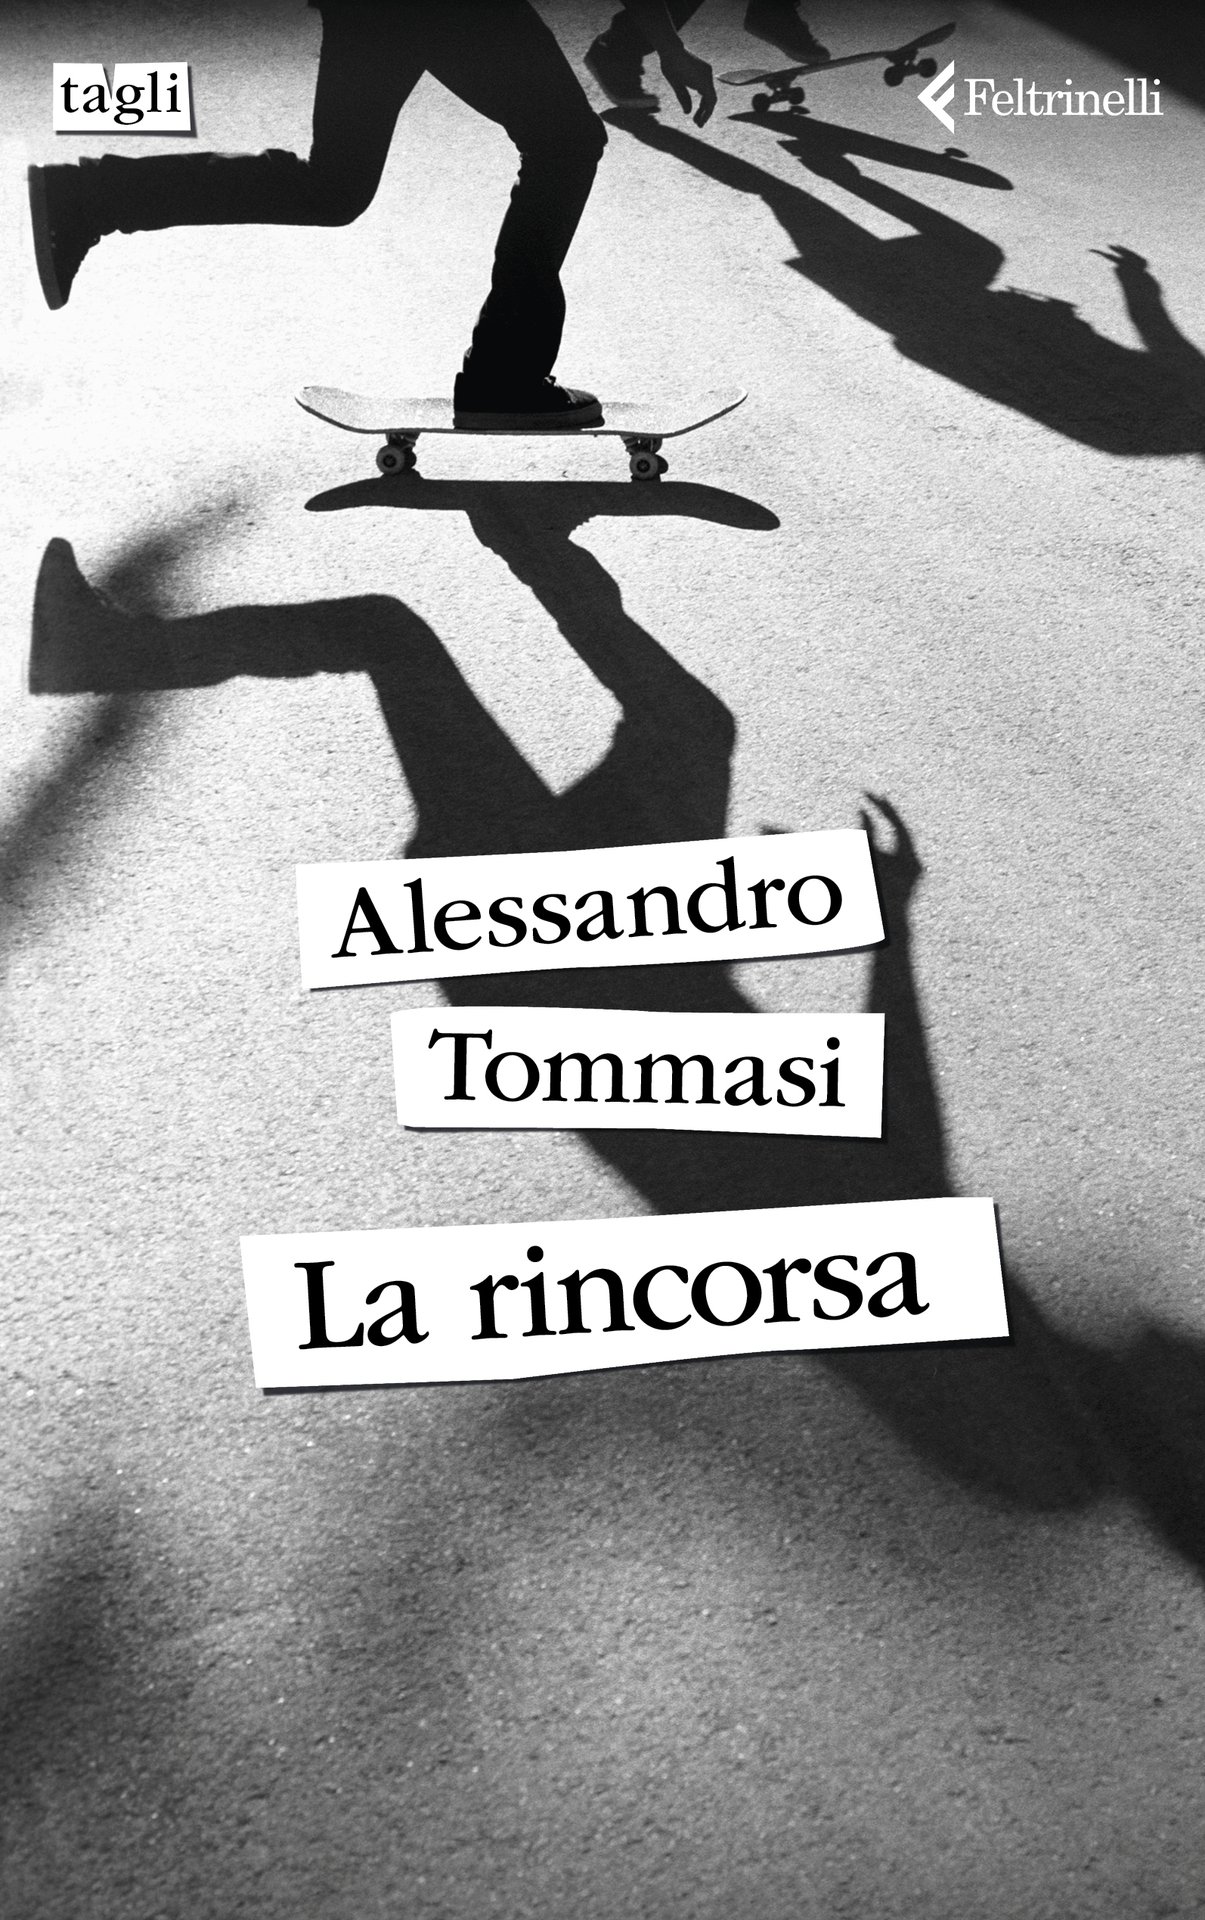 Alessandro Tommasi a Vinitaly